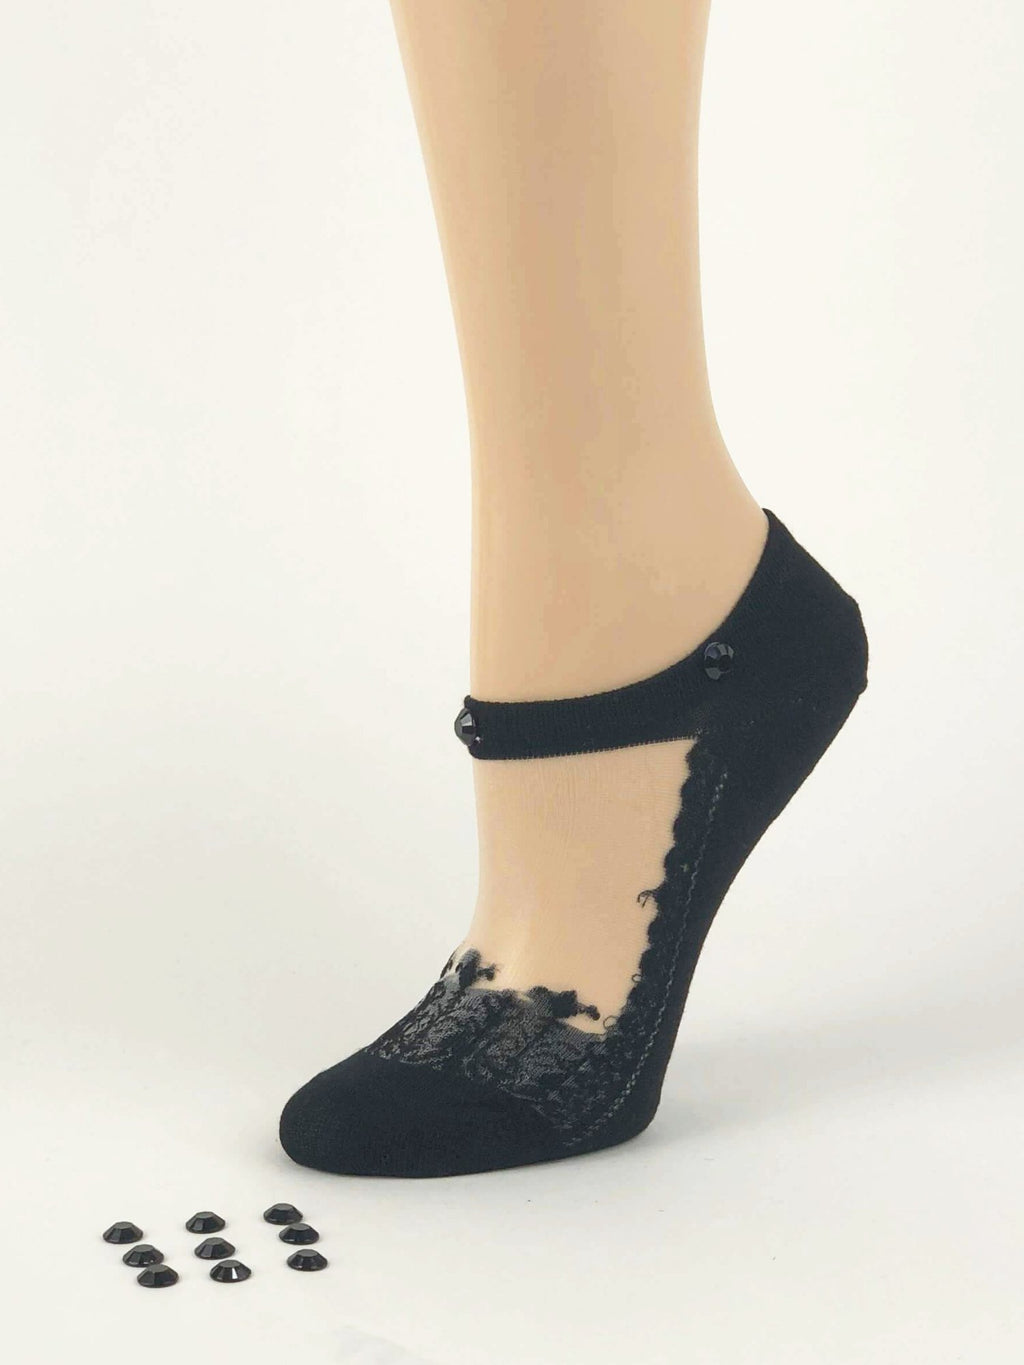 Black Pearled Ankle Sheer Socks - Global Trendz Fashion®